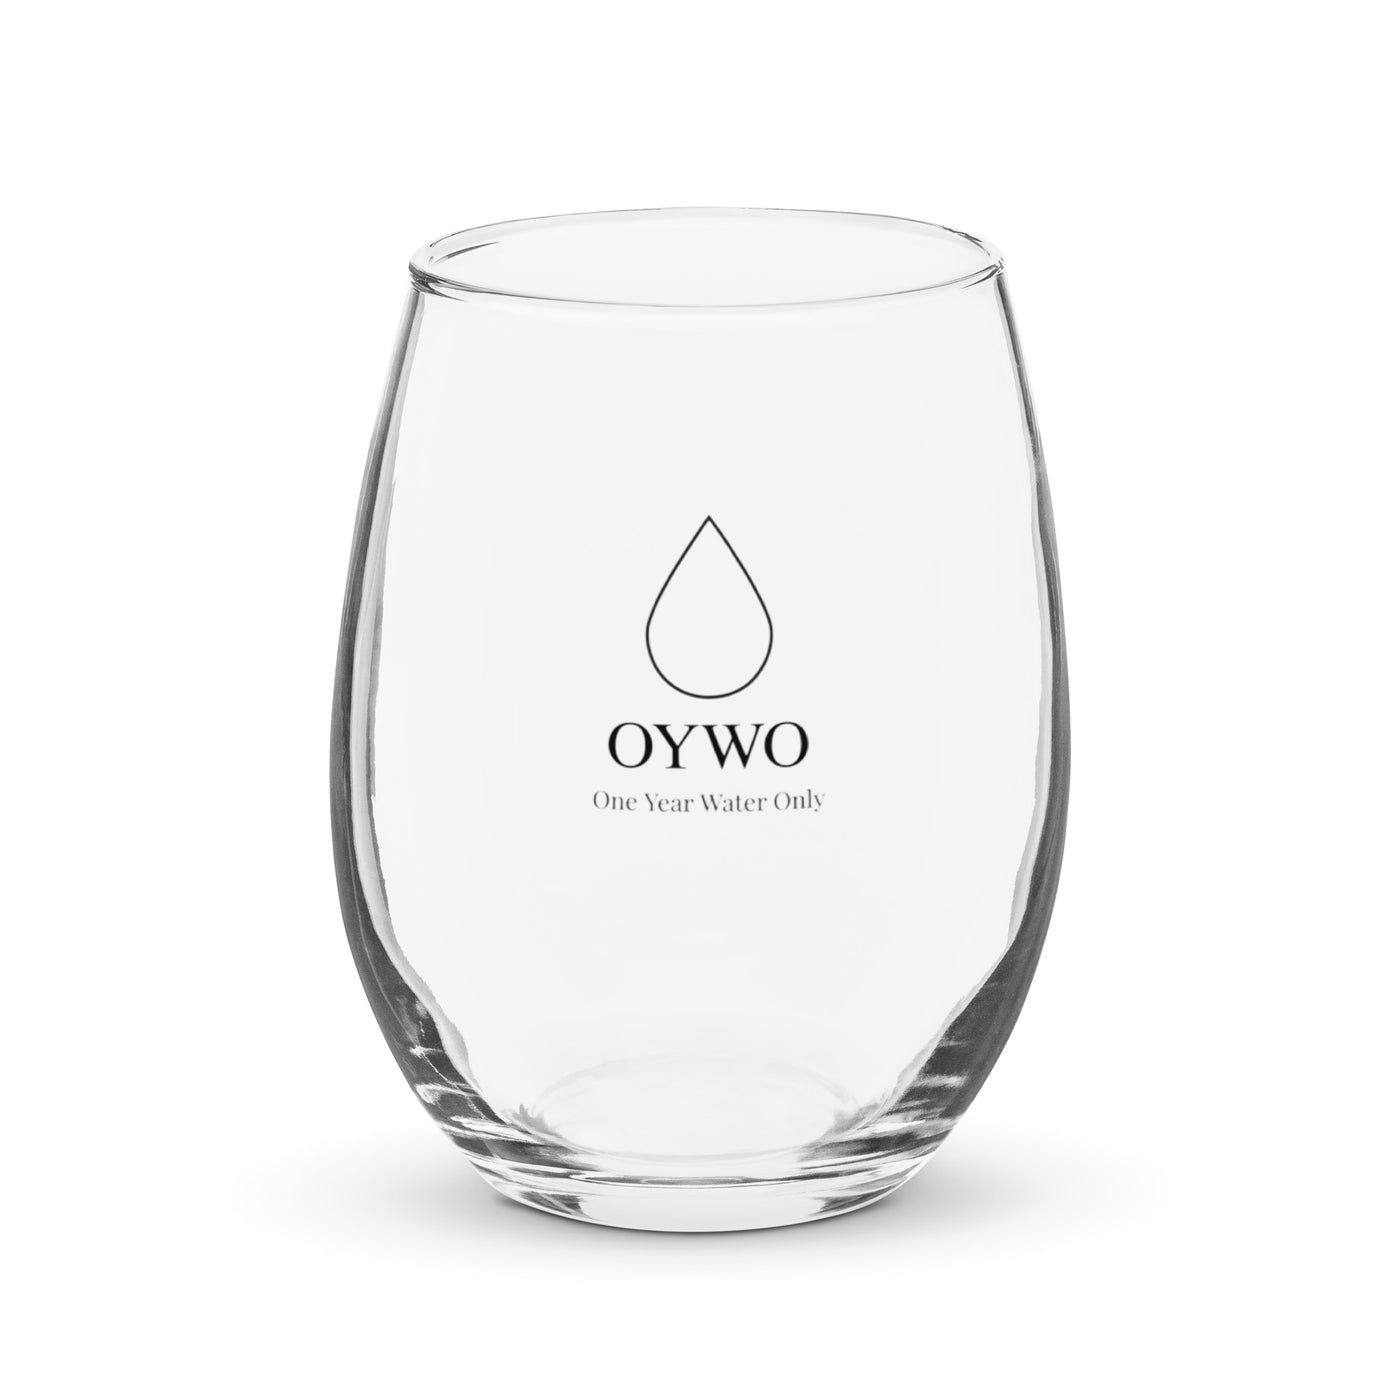 OYWO Water glass